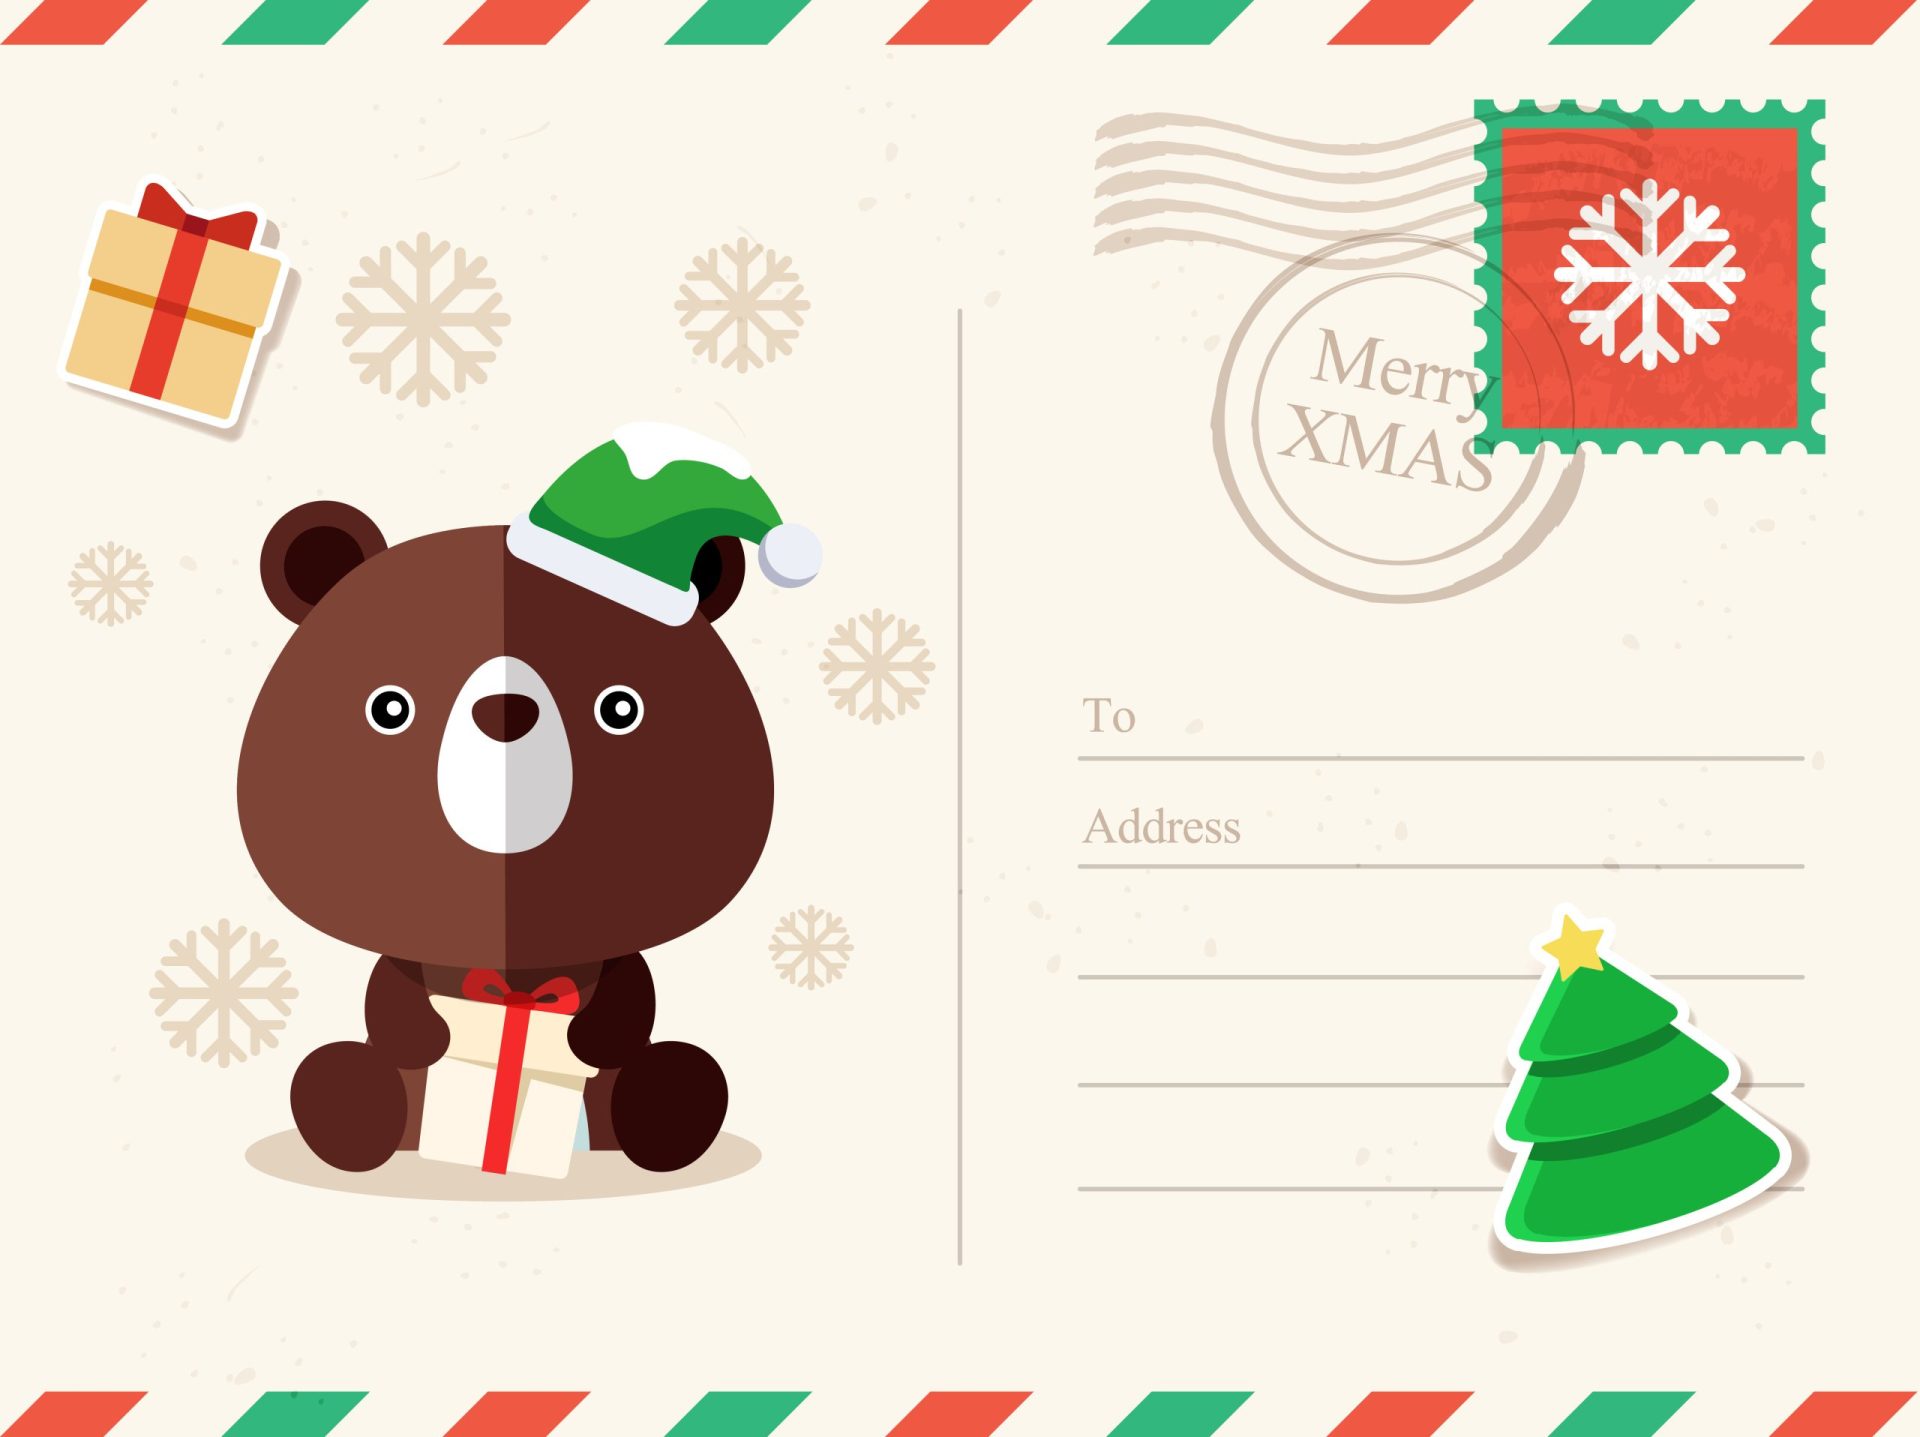 Sabe qual é a origem dos postais de Natal?